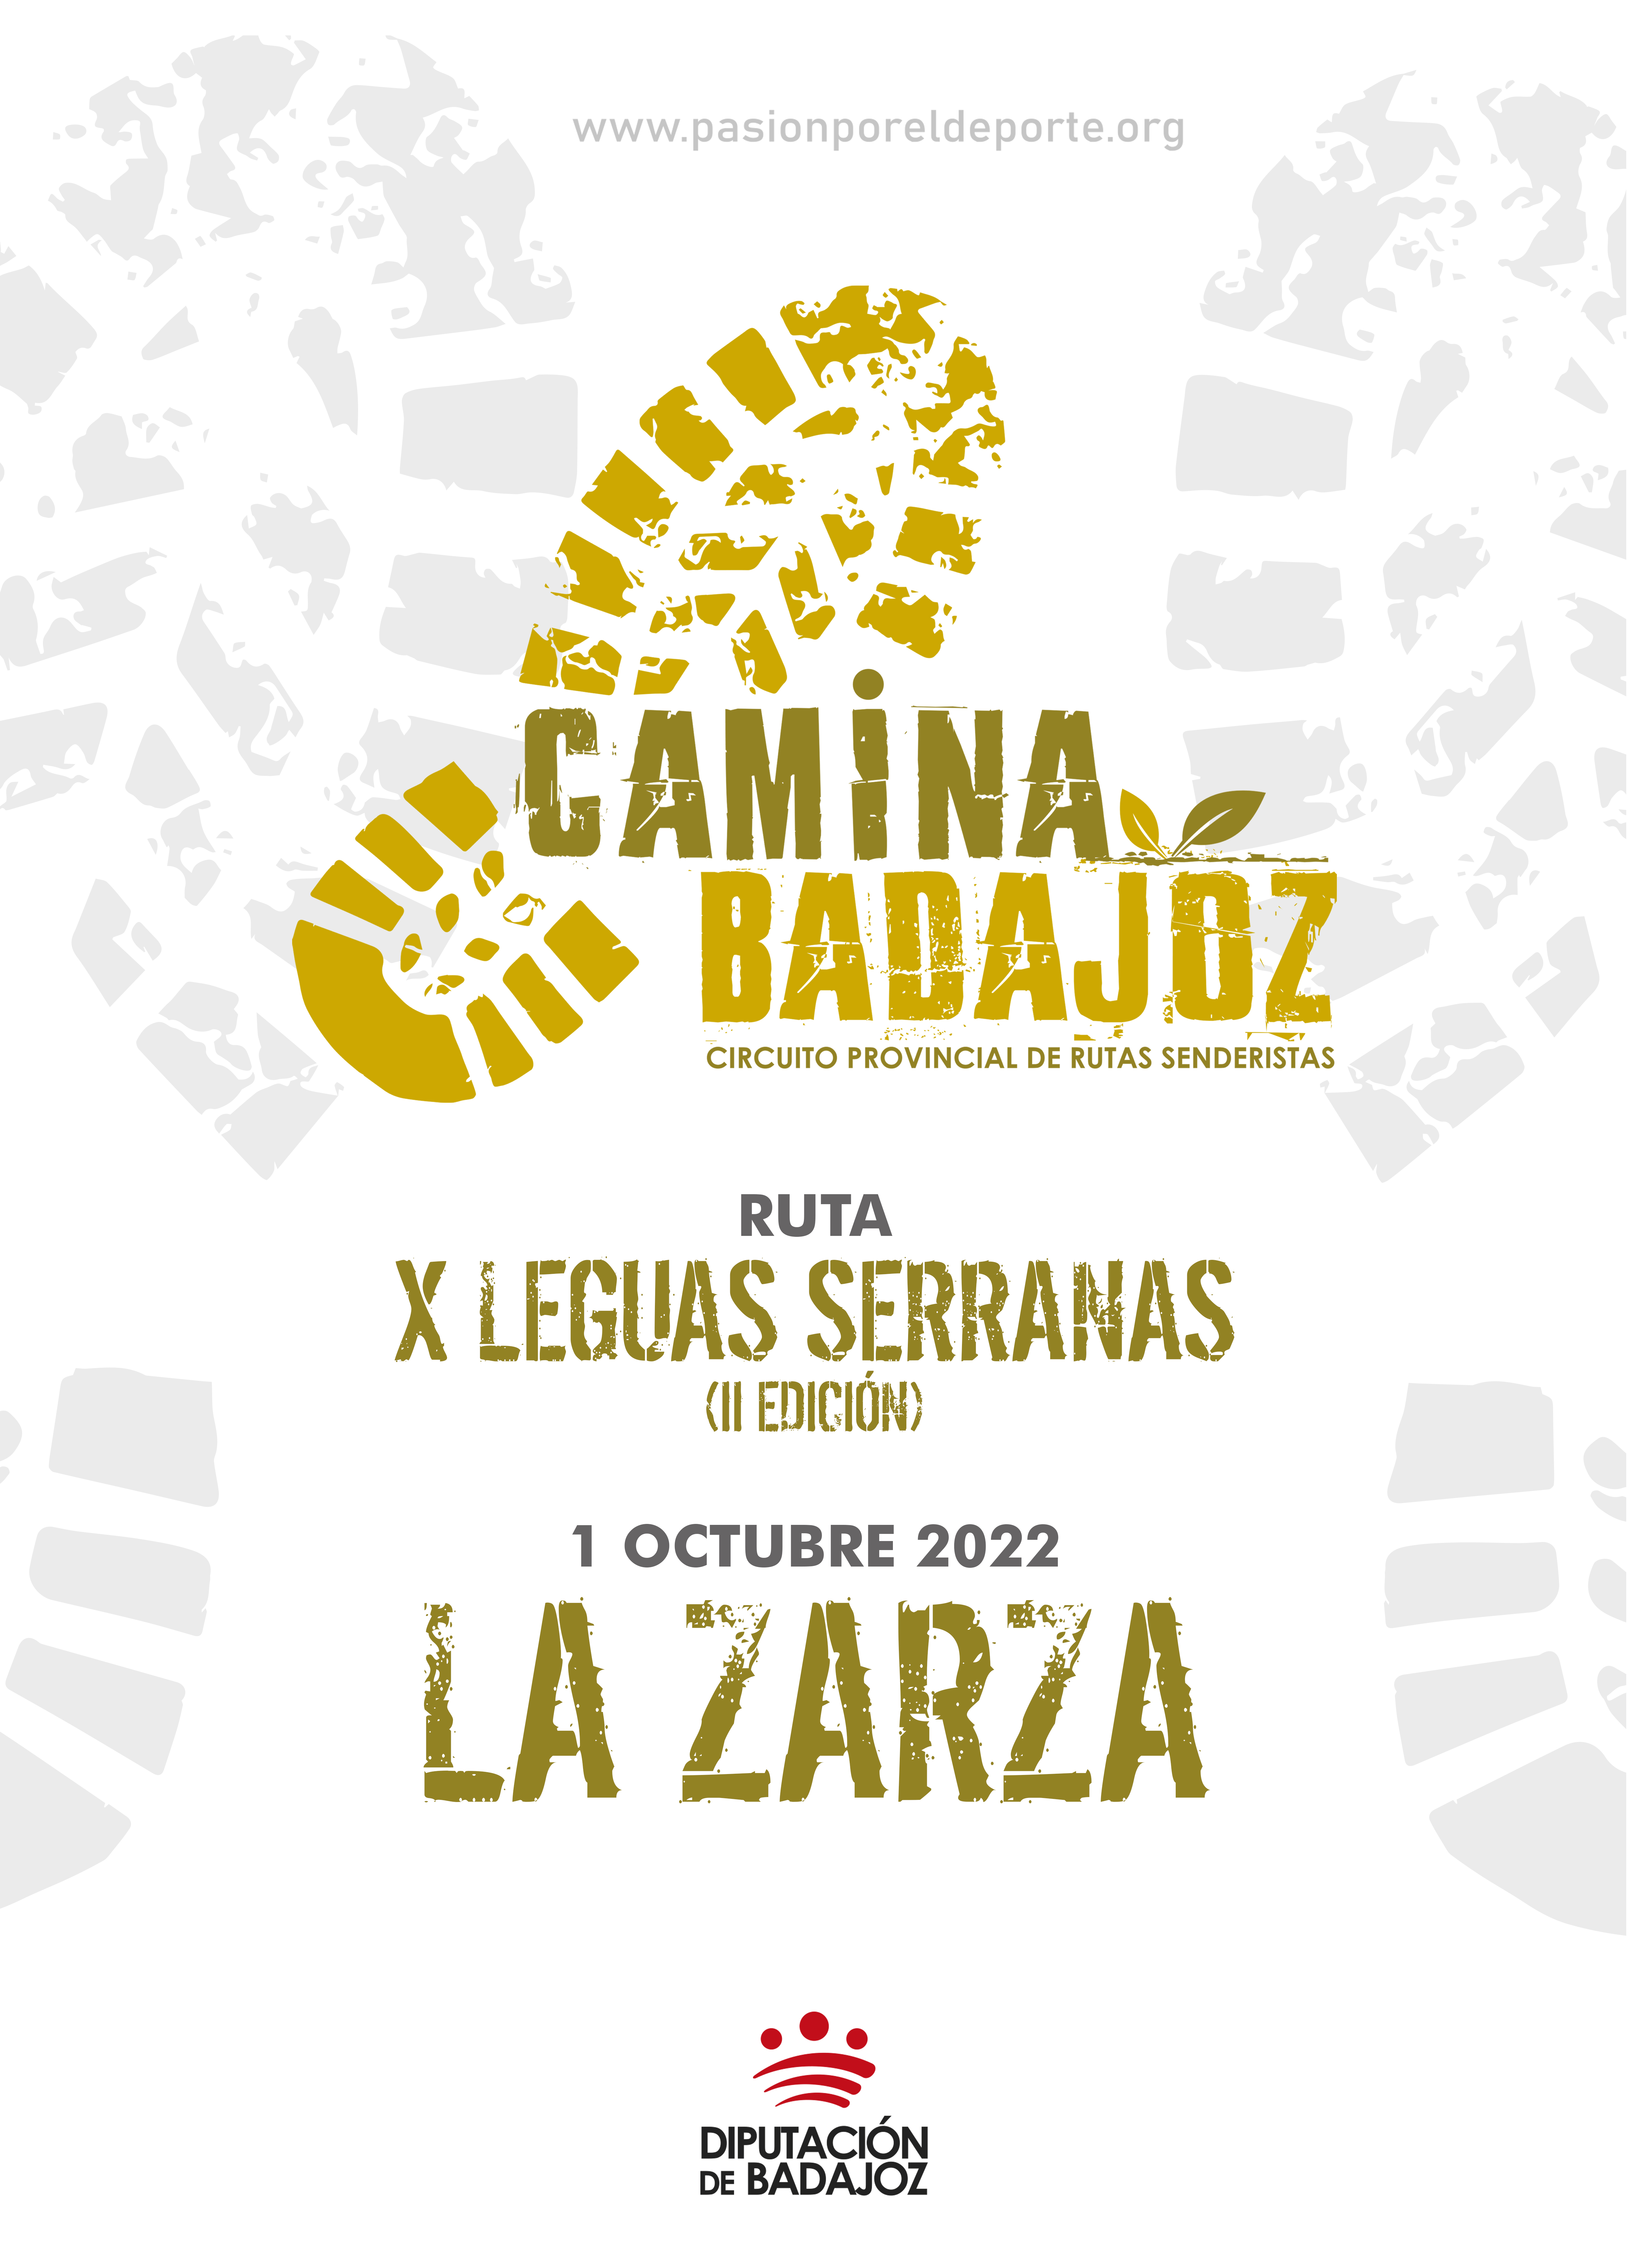 X Leguas Serranas (II Edición)